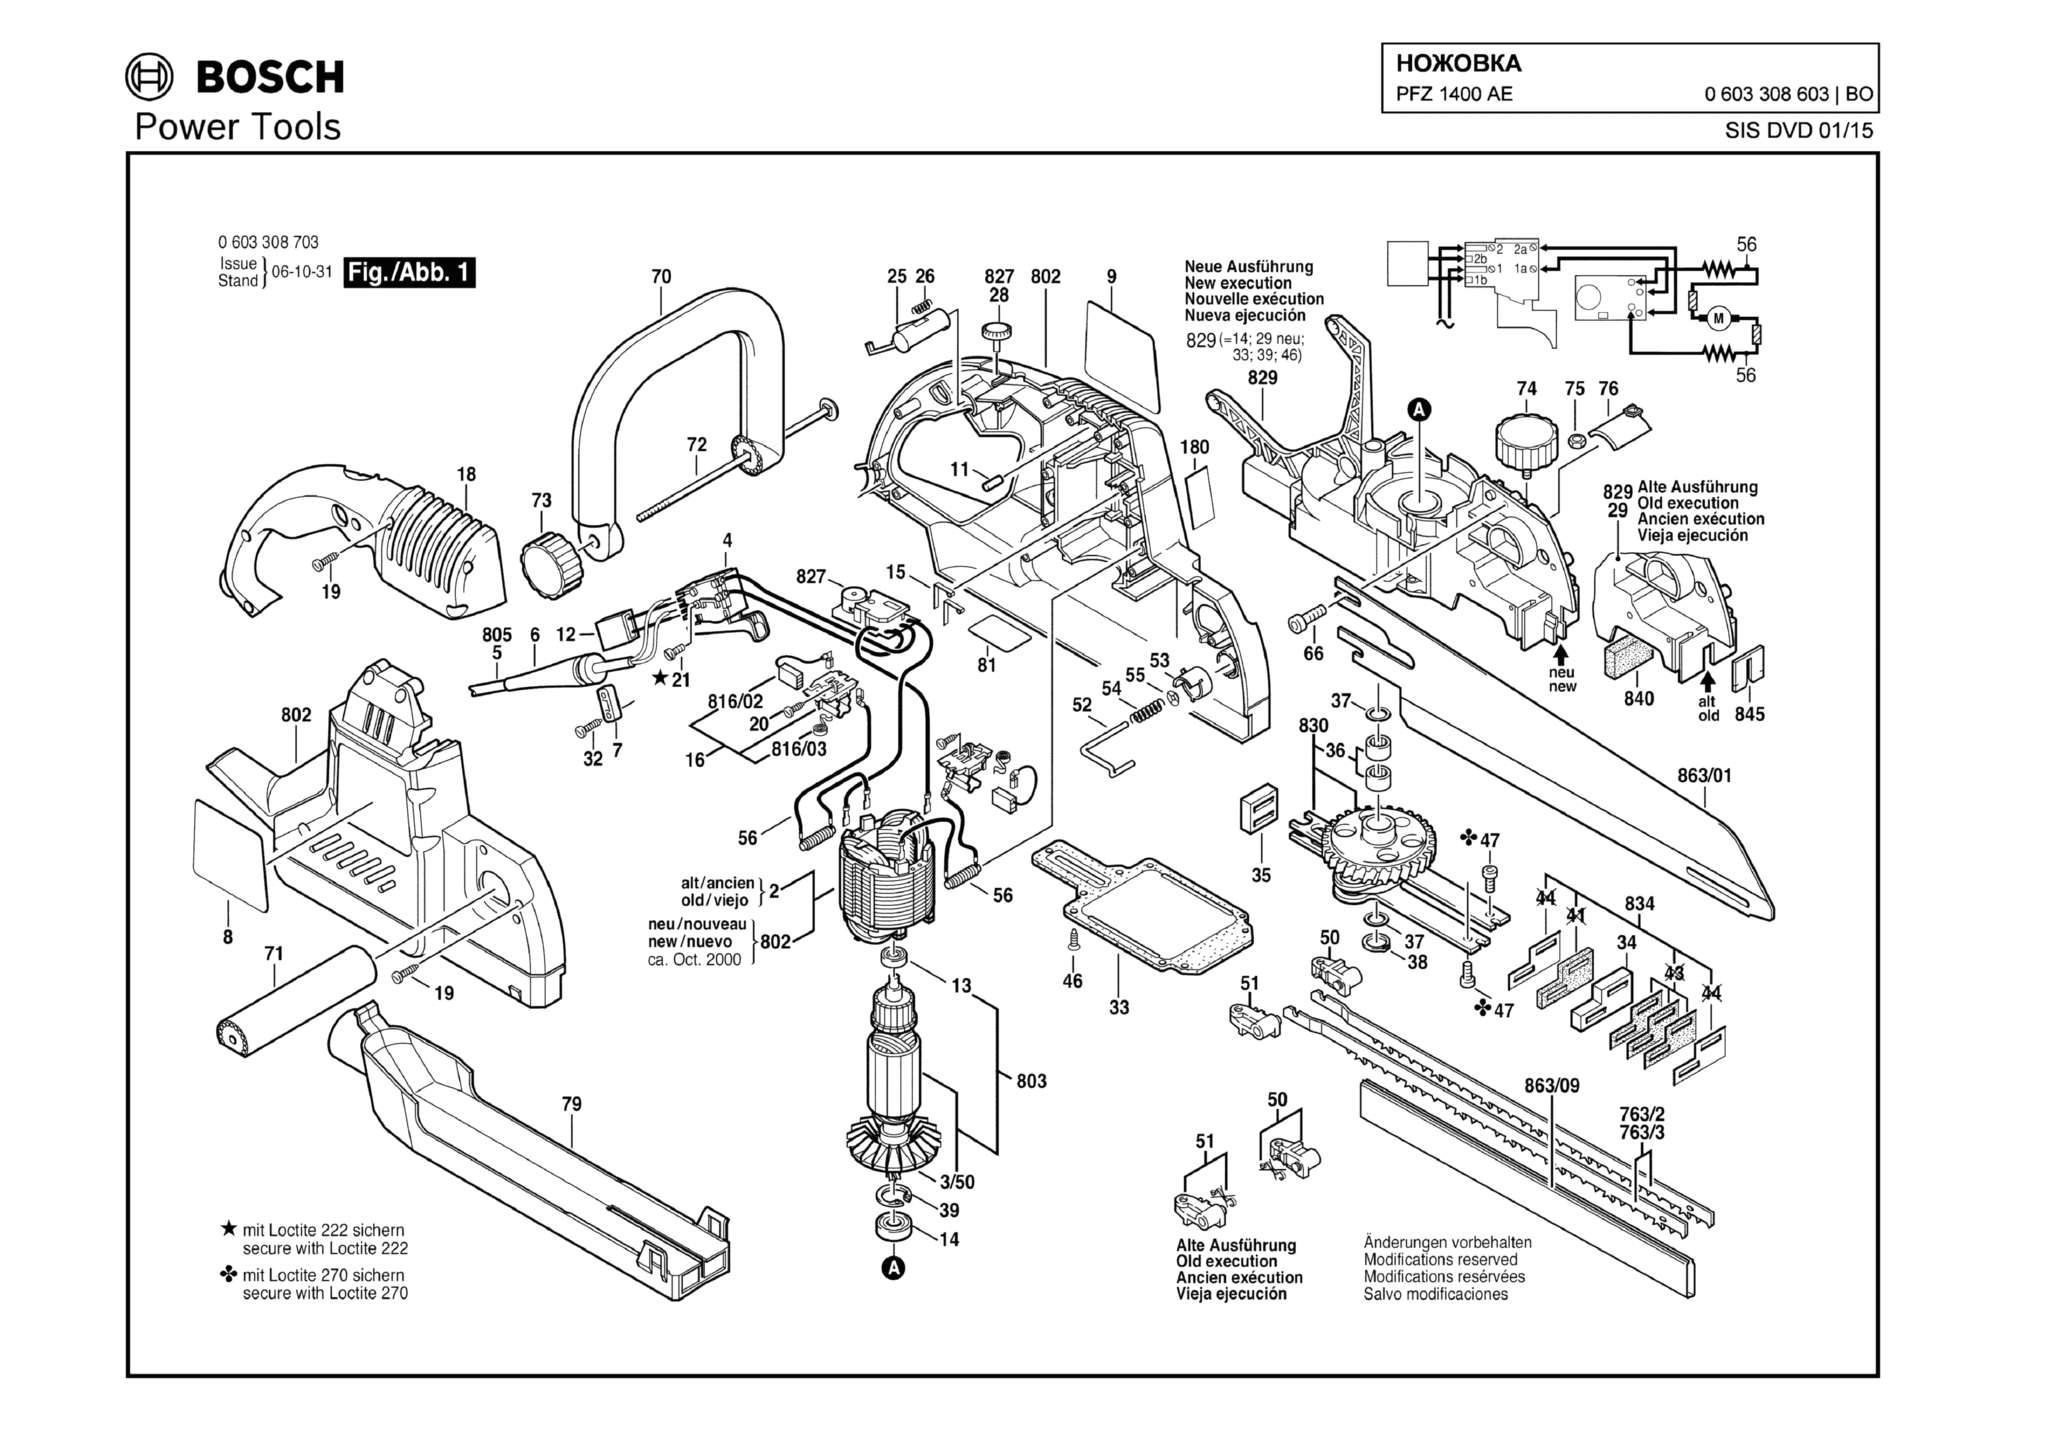 Запчасти, схема и деталировка Bosch PFZ 1400 AE (ТИП 0603308603)